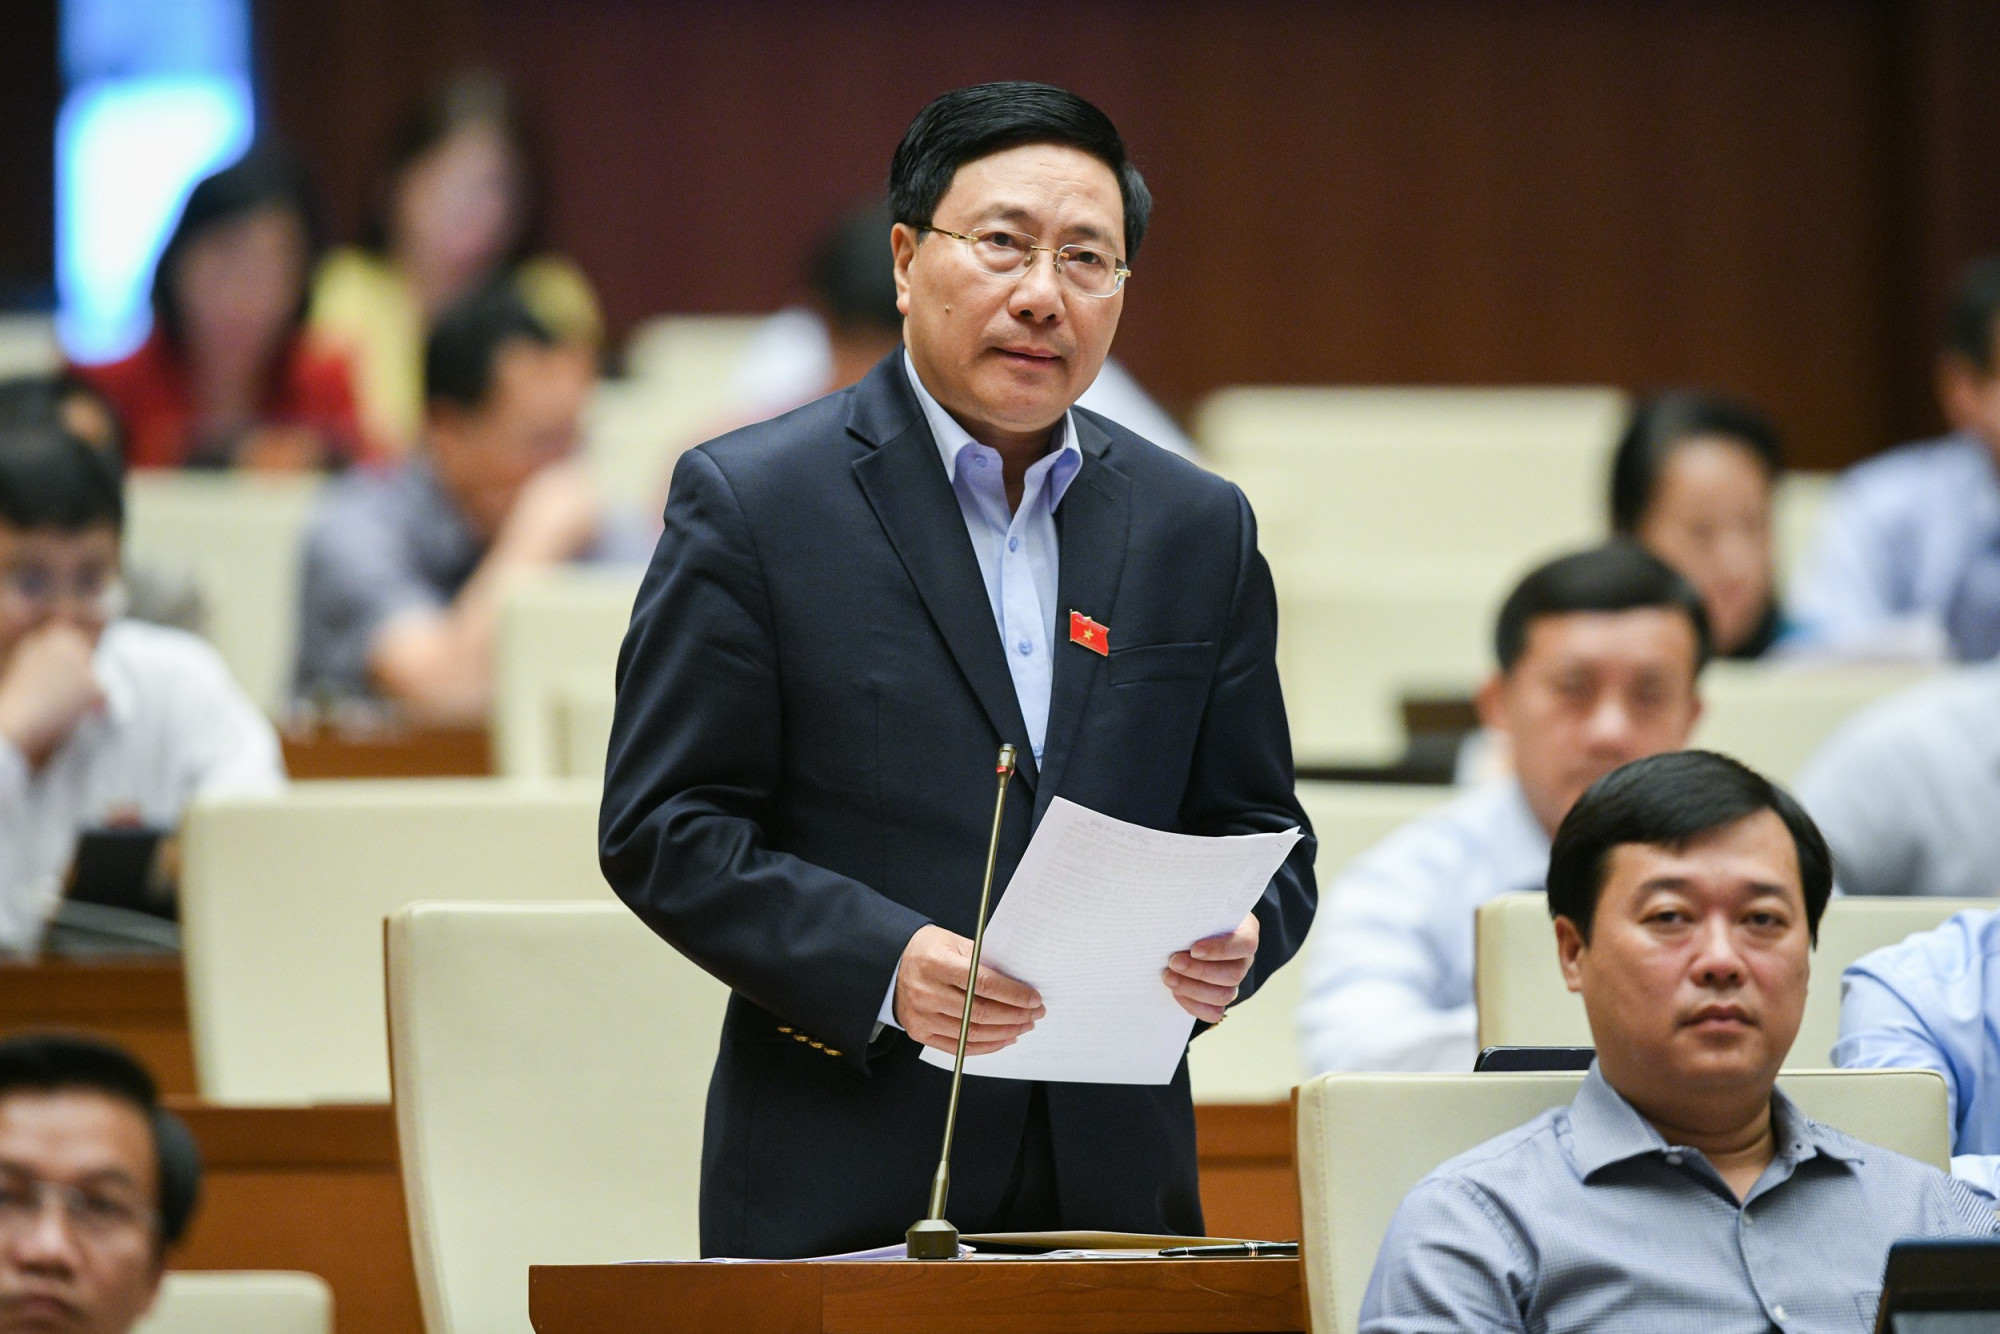 Phó Thủ tướng Chính phủ Phạm Bình Minh làm rõ thêm một số vấn đề về lĩnh vực nội vụ tại phiên chất vấn sáng 5/11